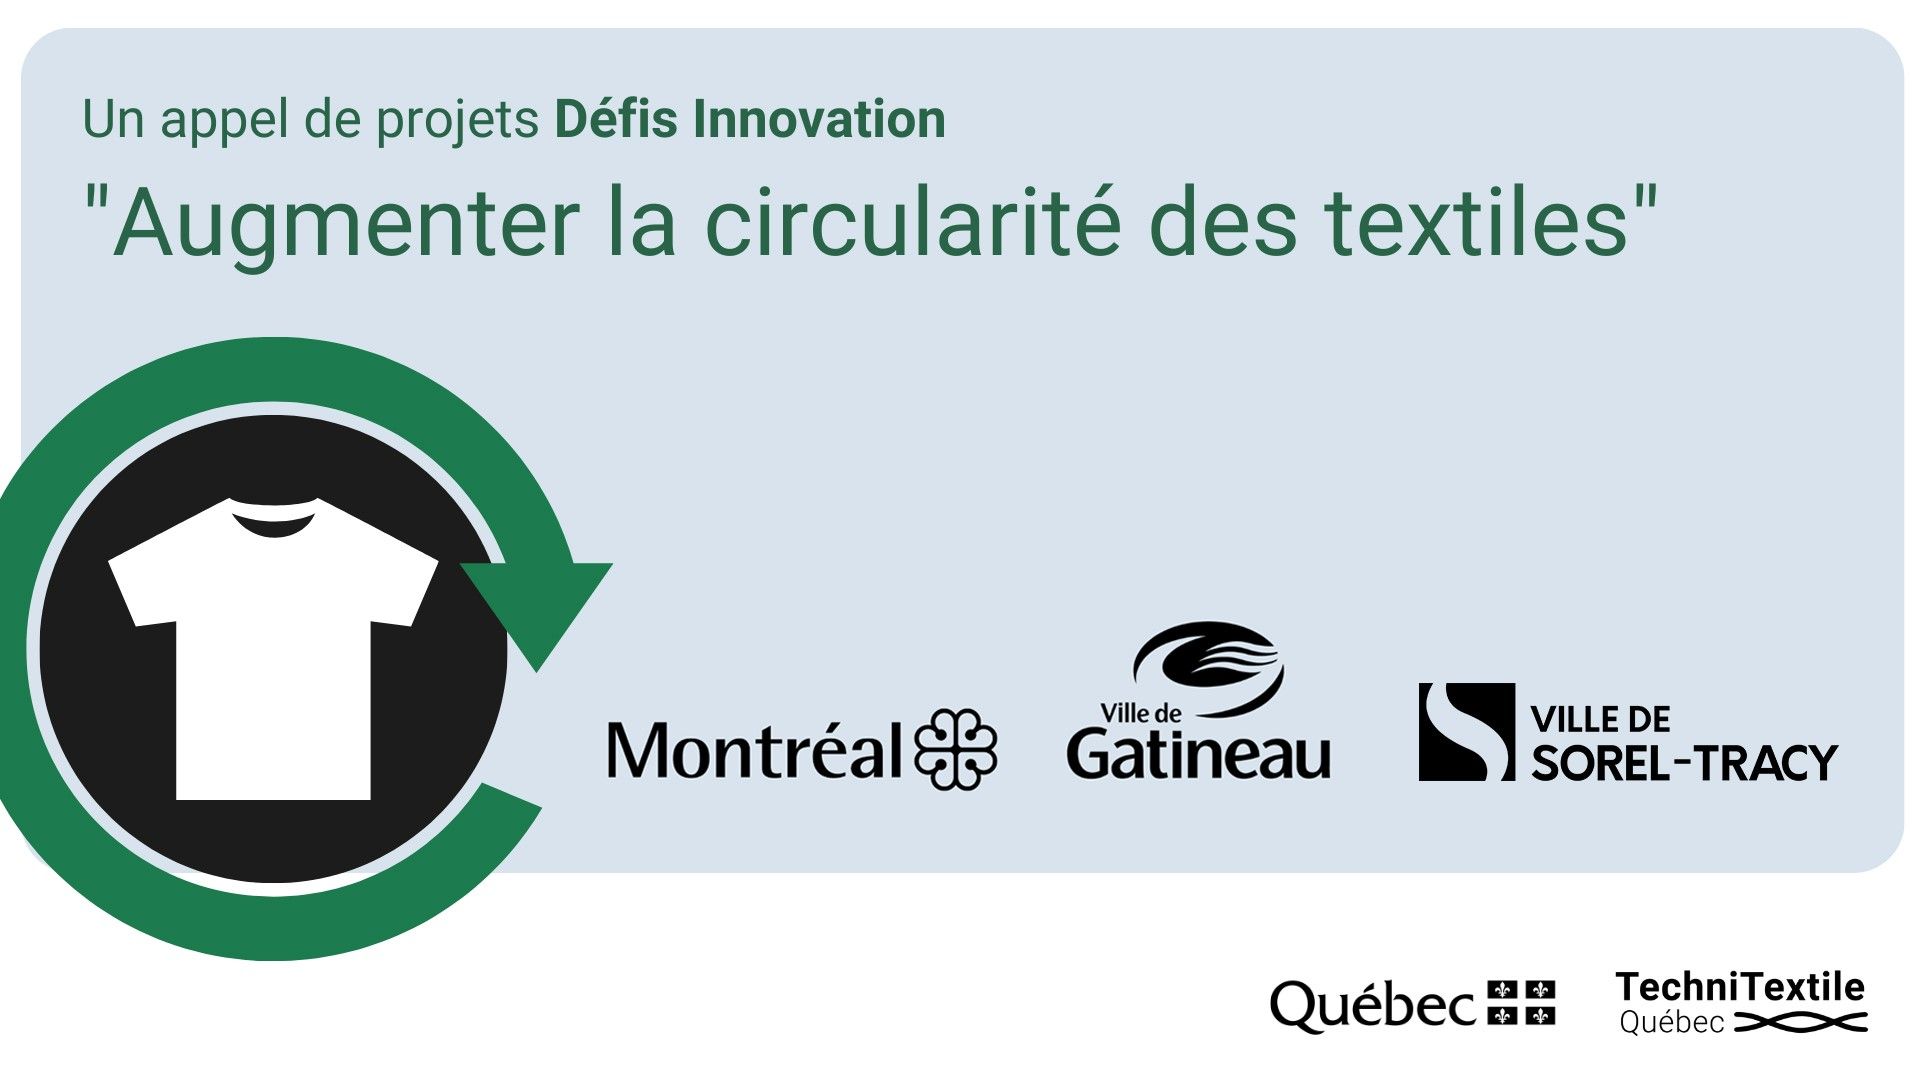 Les villes de Montréal, Gatineau et Sorel-Tracy lancent un Défi Innovation pour augmenter la circularité des textiles